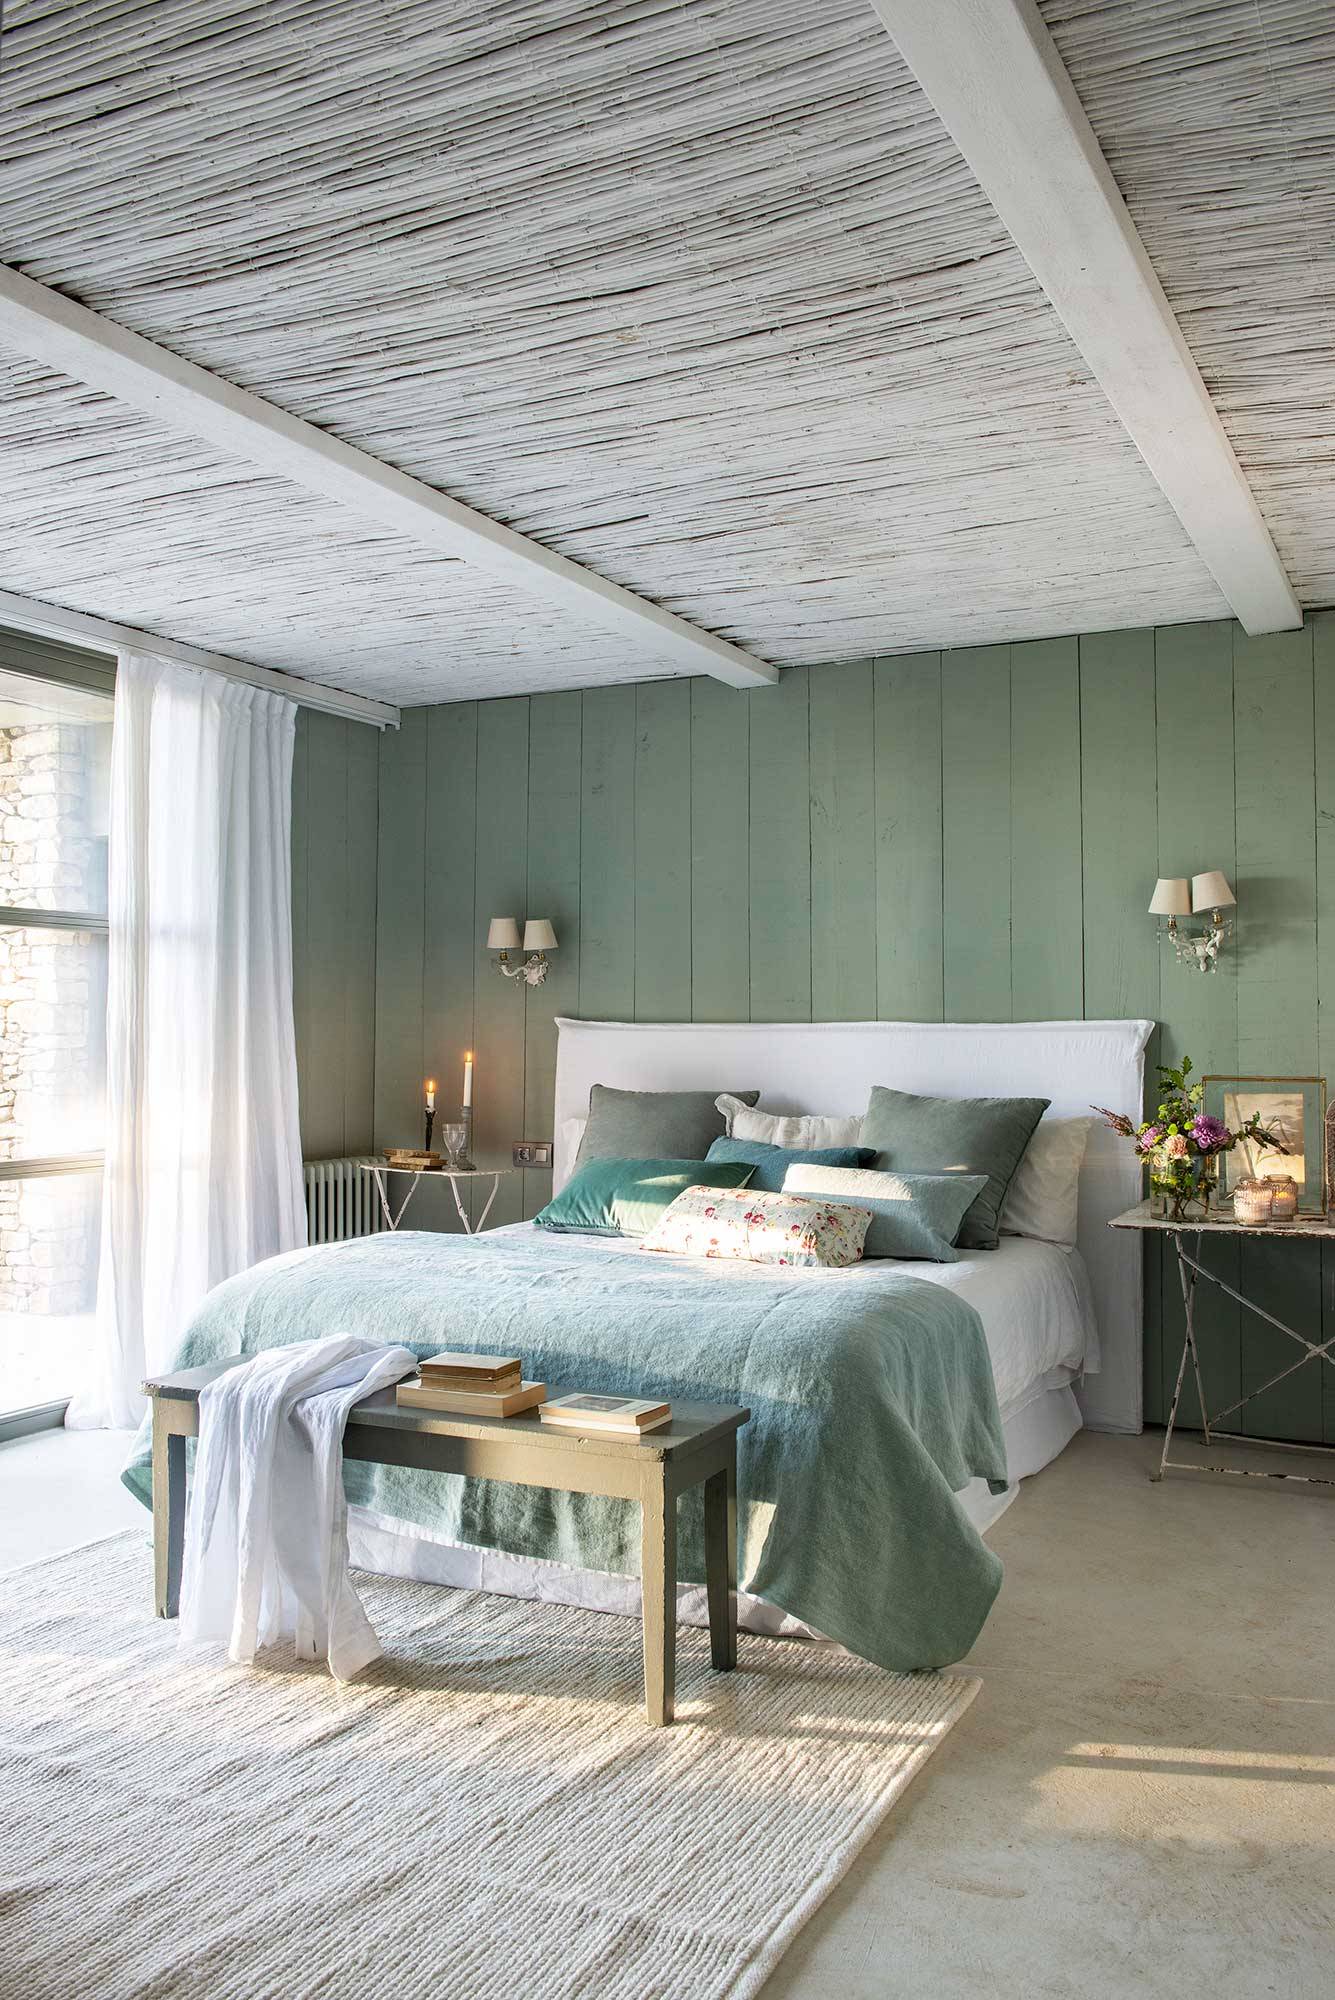 Dormitorio de primavera de estilo vintage con vigas de madera y pared de lamas pintadas en verde.